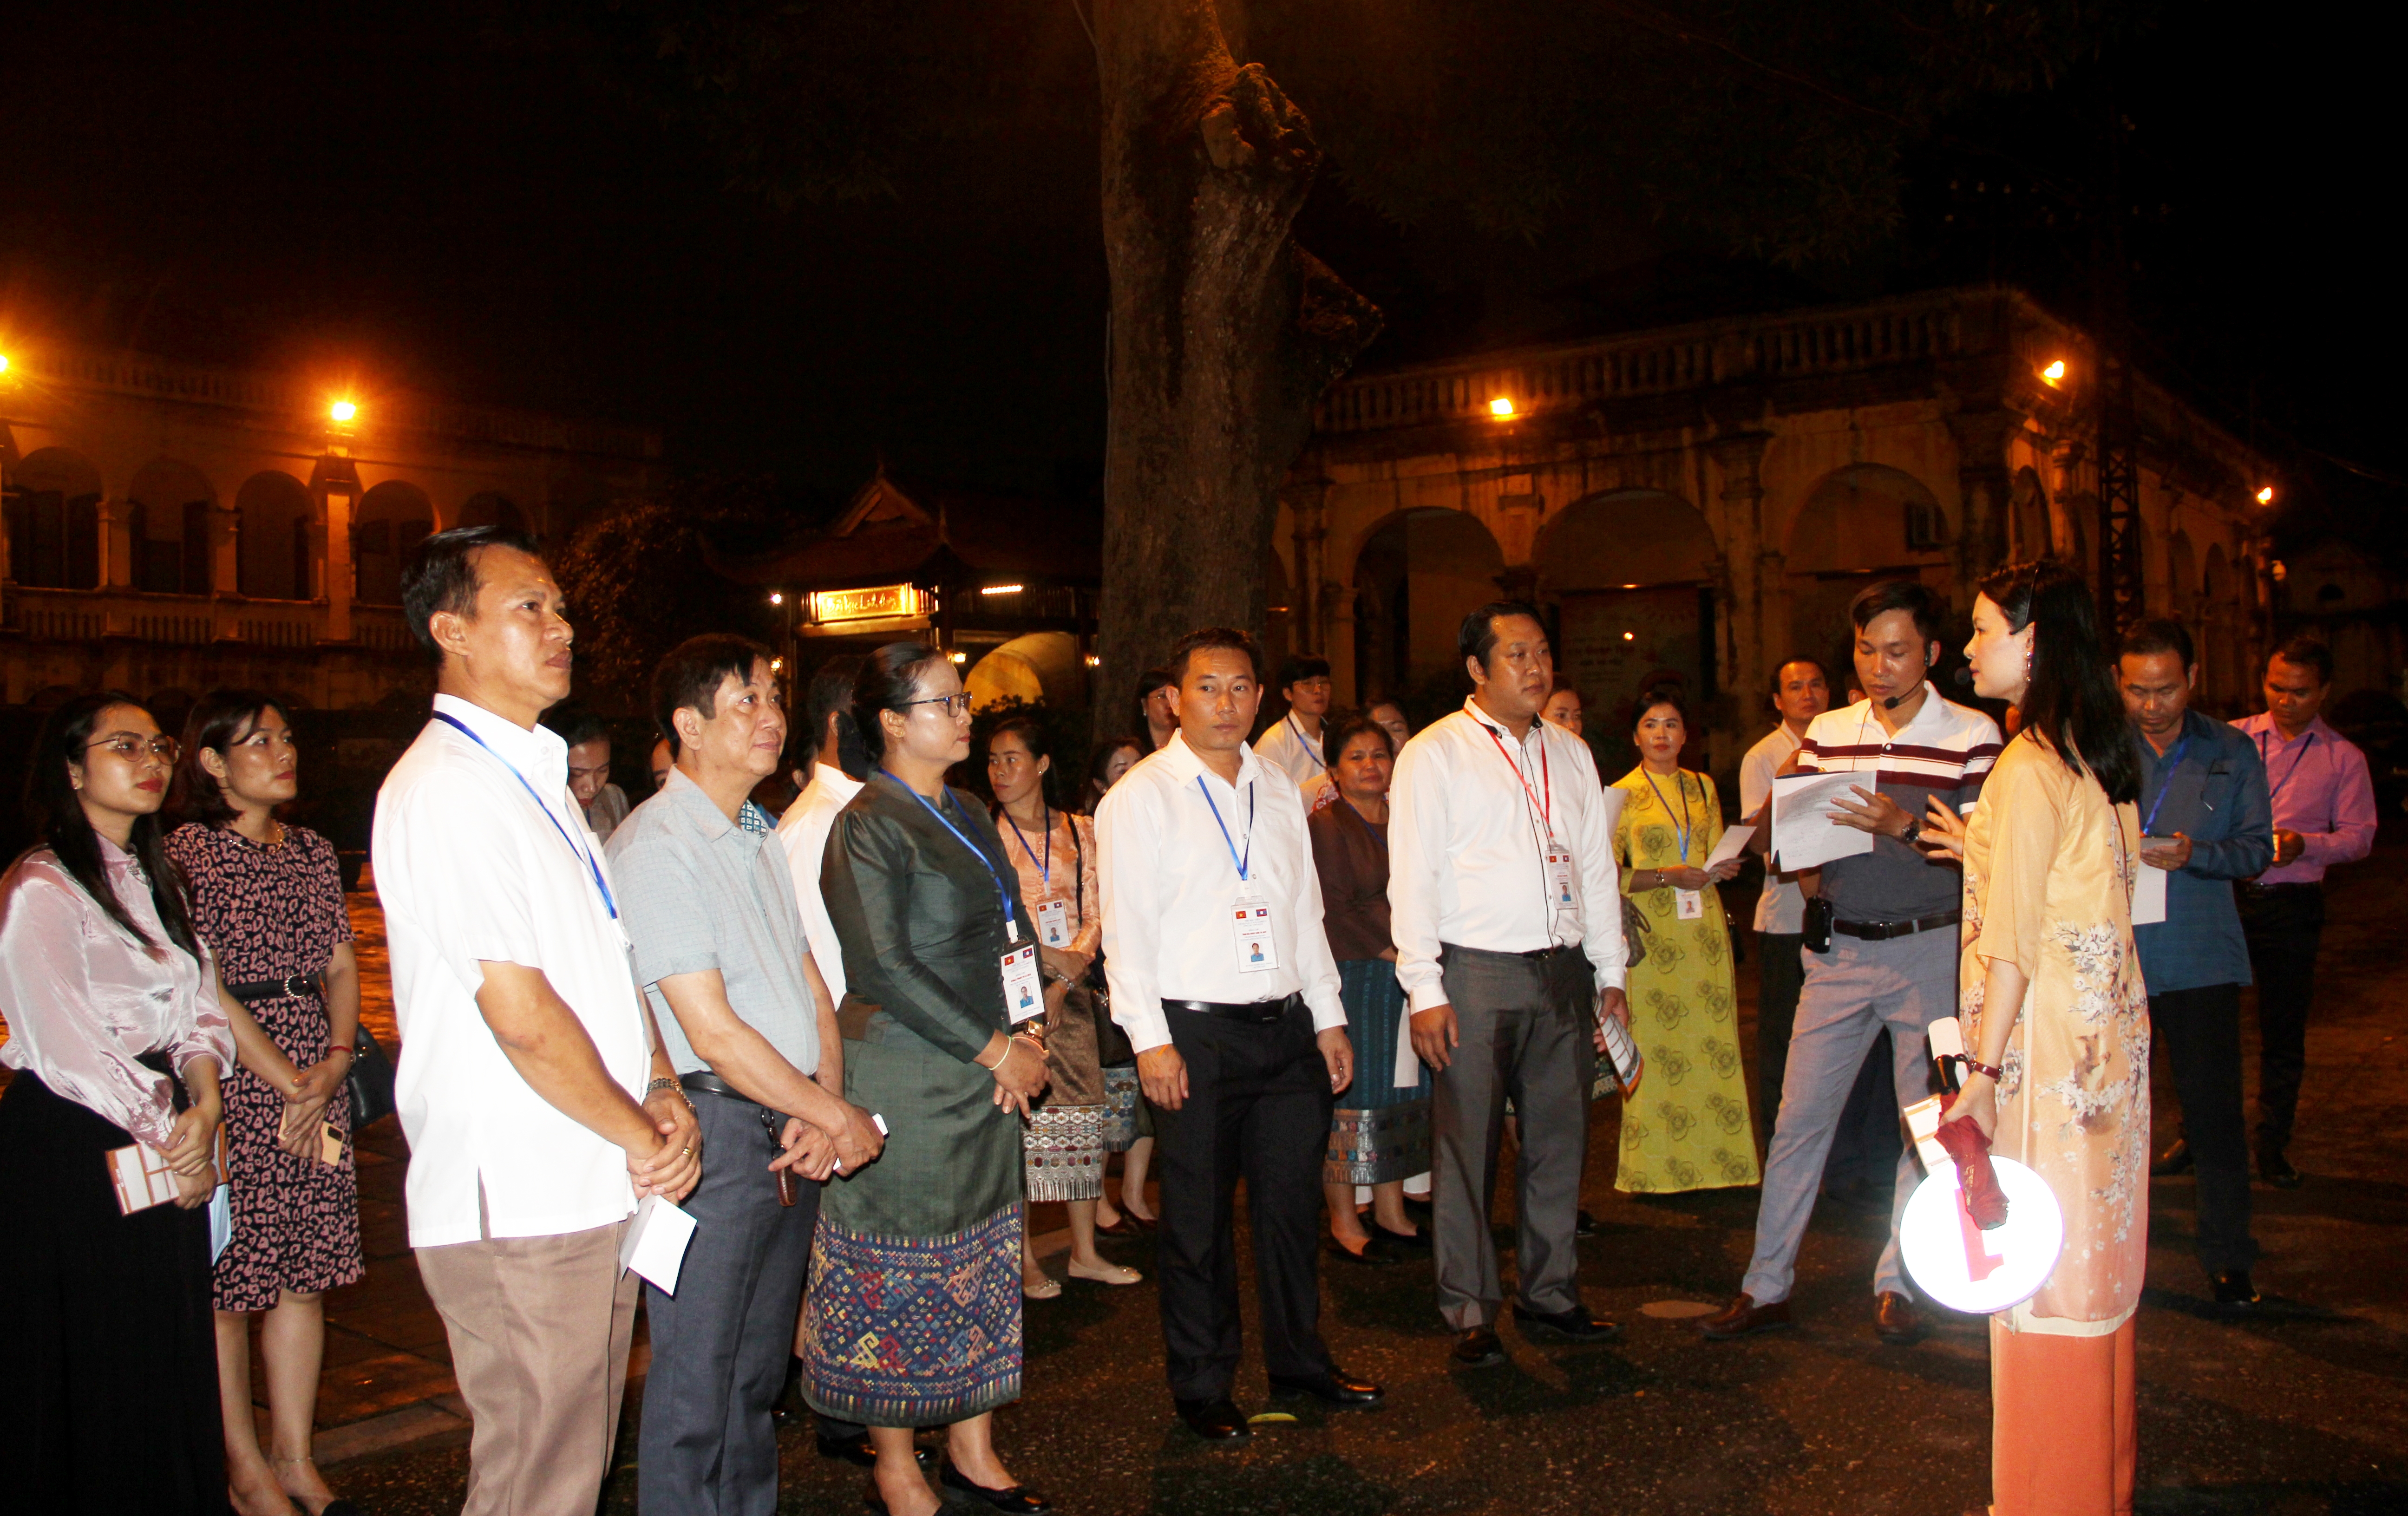 Đoàn cán bộ LHCĐ thành phố Viêng Chăn thăm, làm việc với Công đoàn Viên chức thành phố Hà Nội